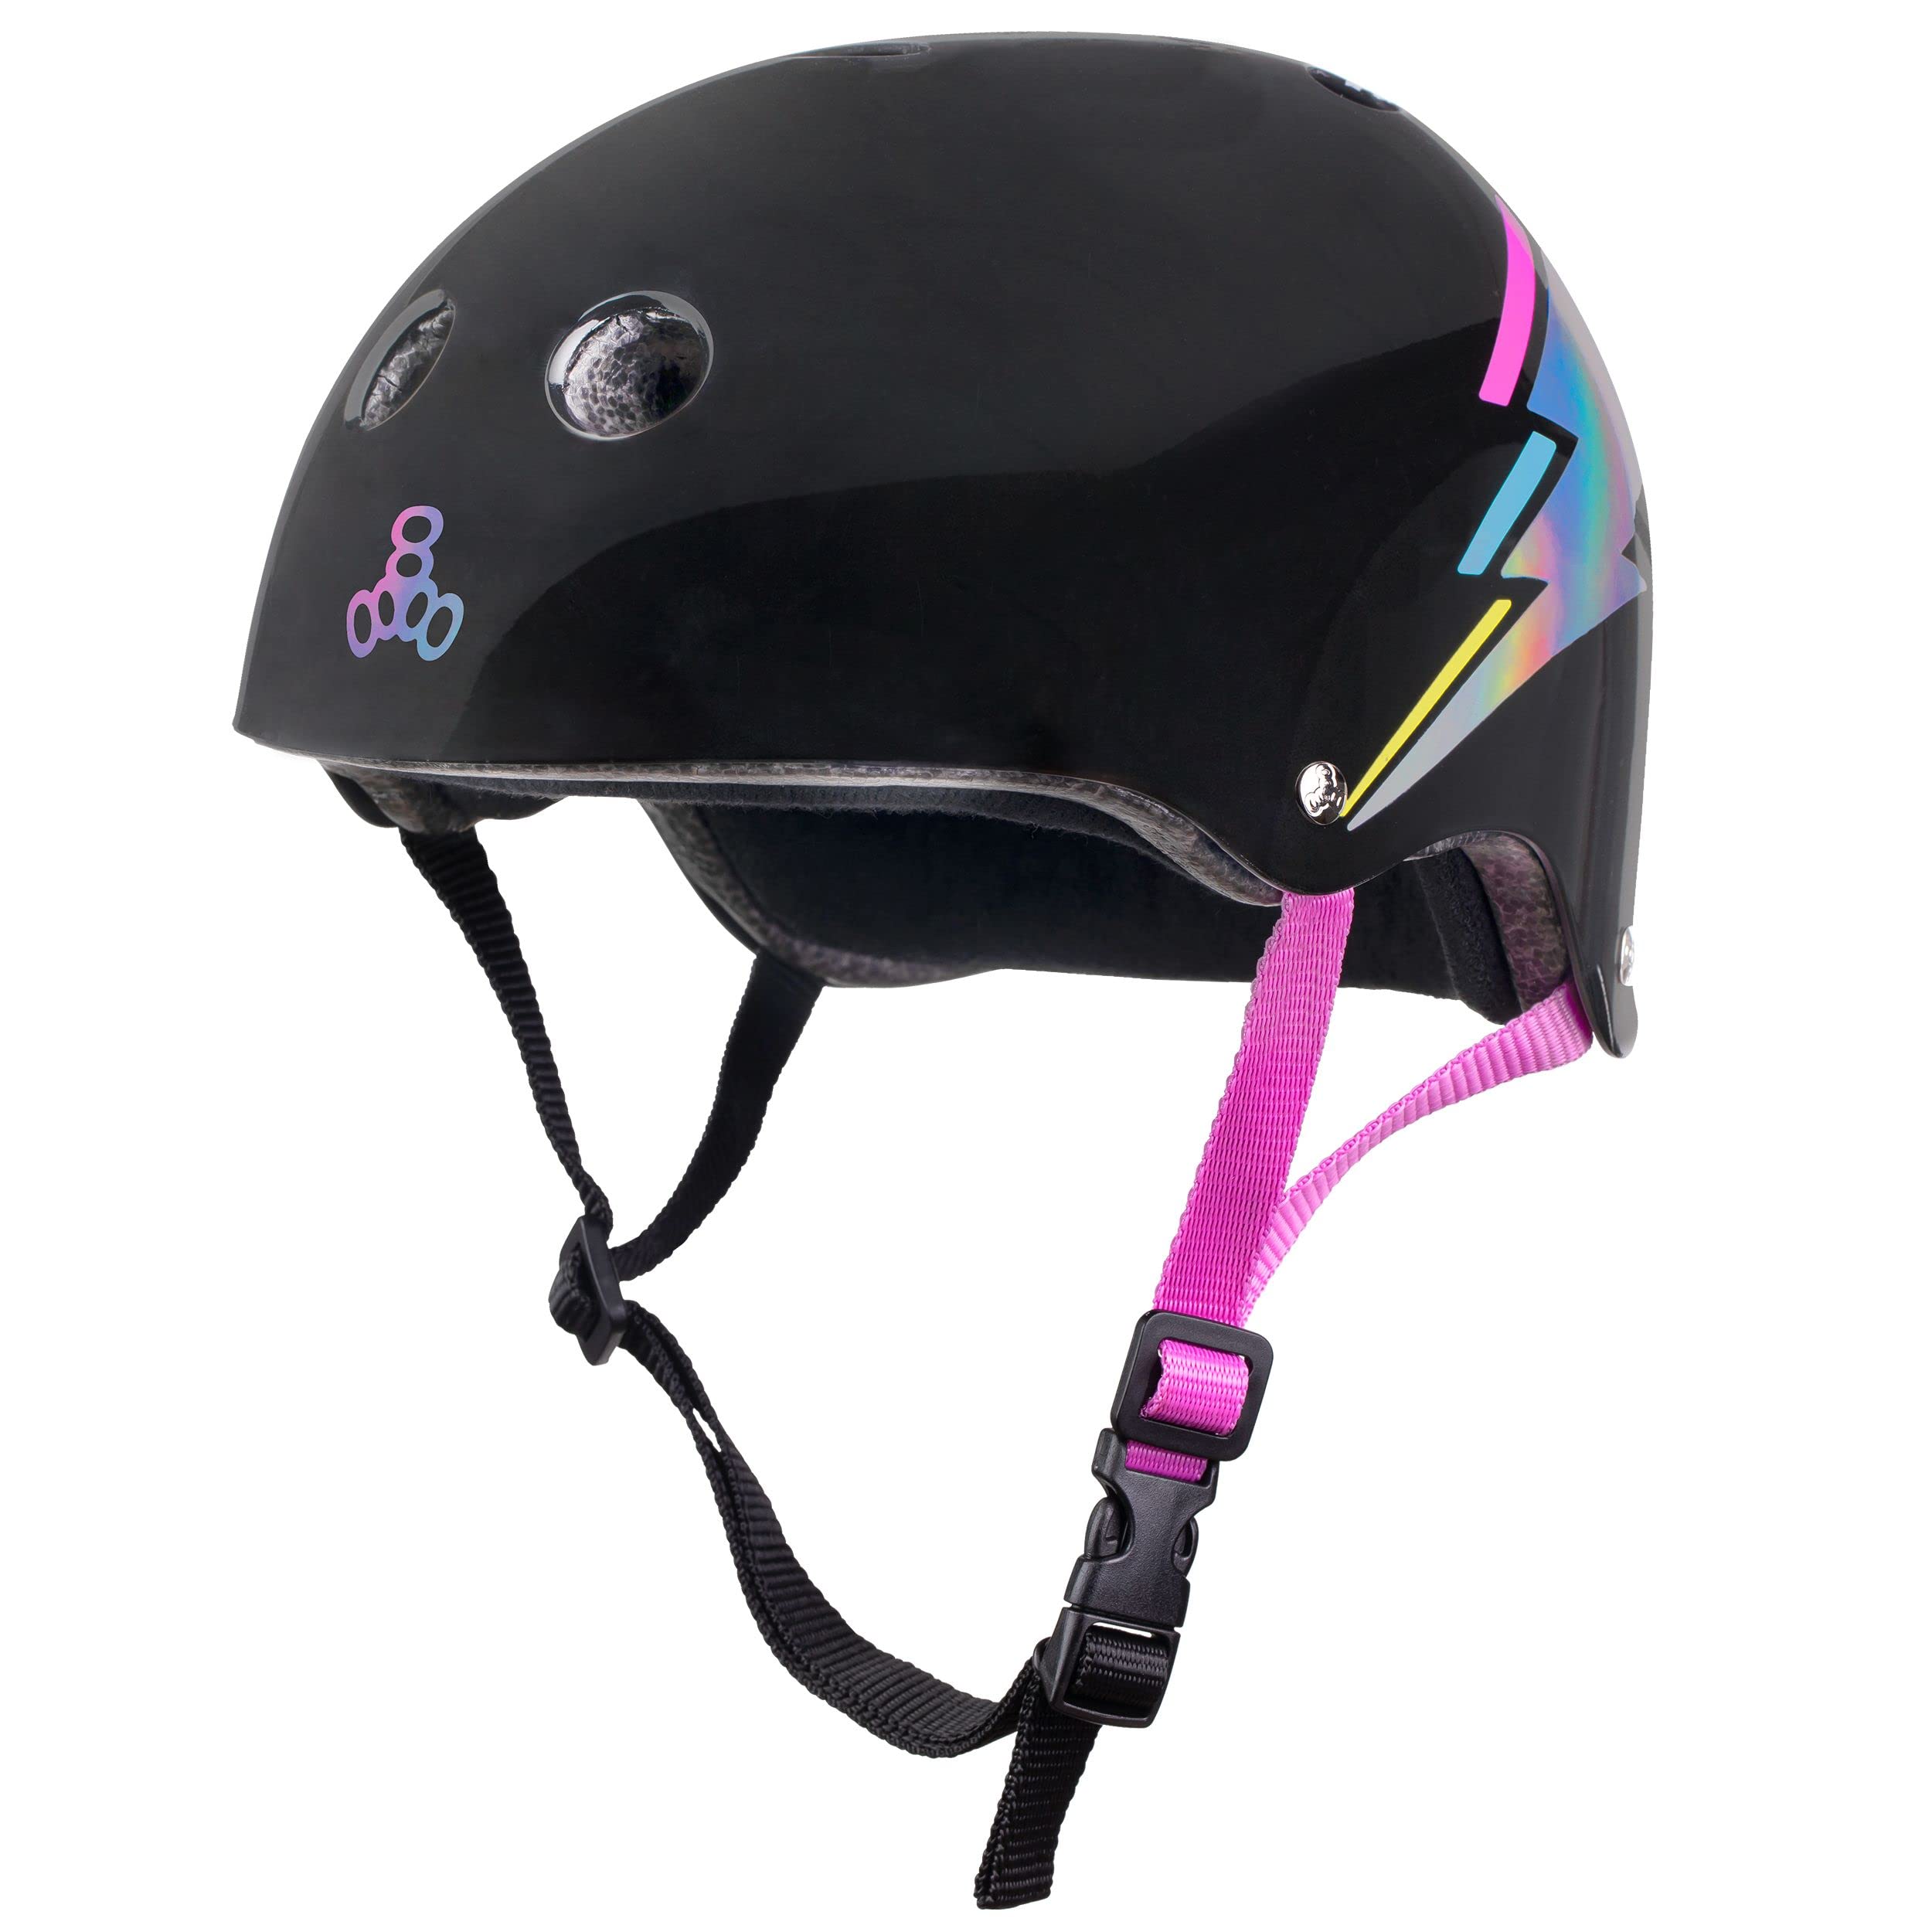 Triple Eight 适用于滑板、BMX 和轮滑运动的经过认证的 Sweatsaver 头盔